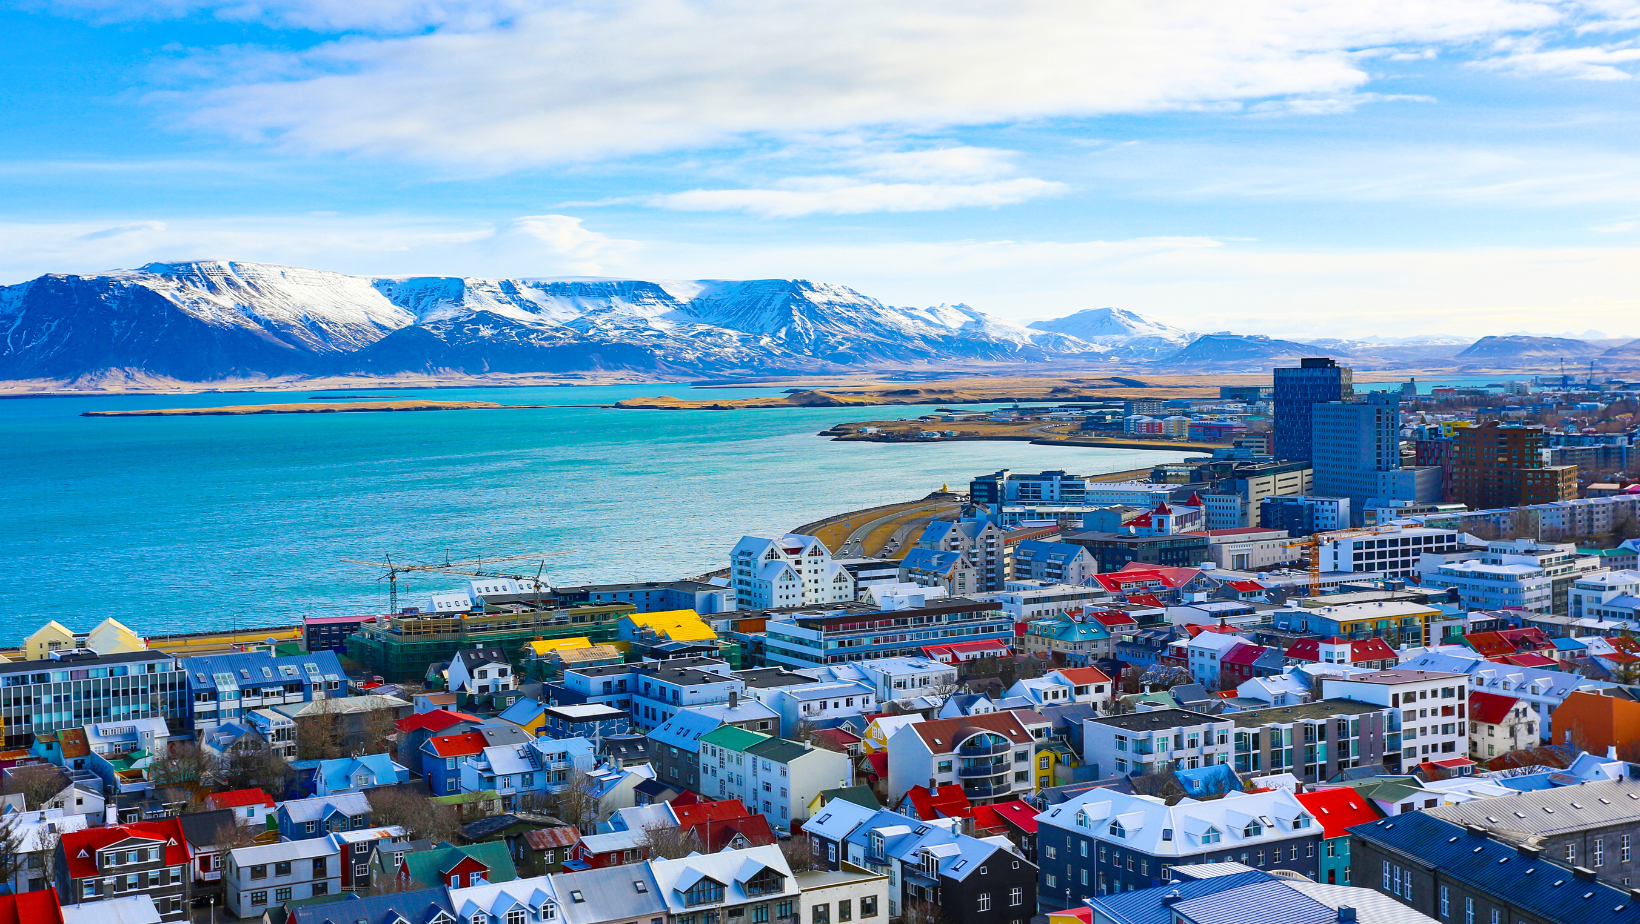 נוף של עיירה באיסלנד עם בתים צבעוניים וברקע הים